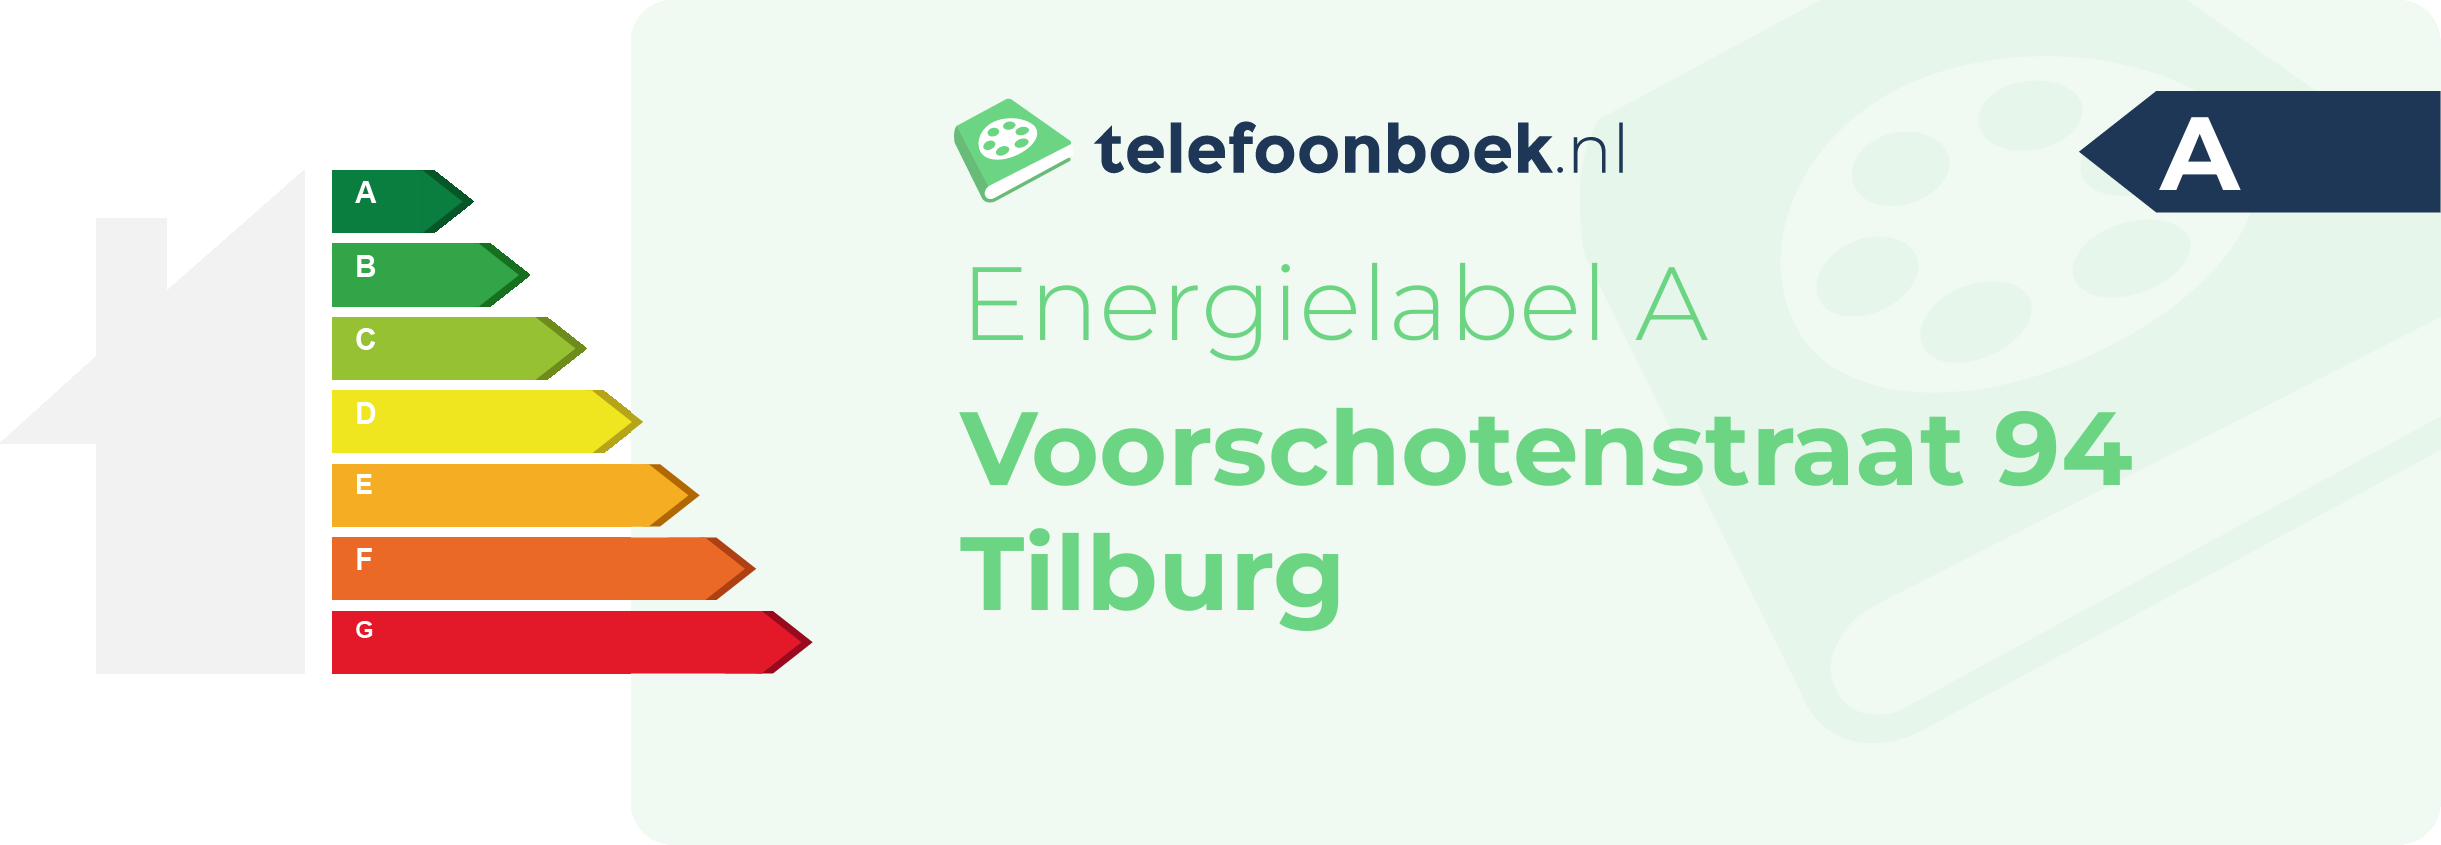 Energielabel Voorschotenstraat 94 Tilburg